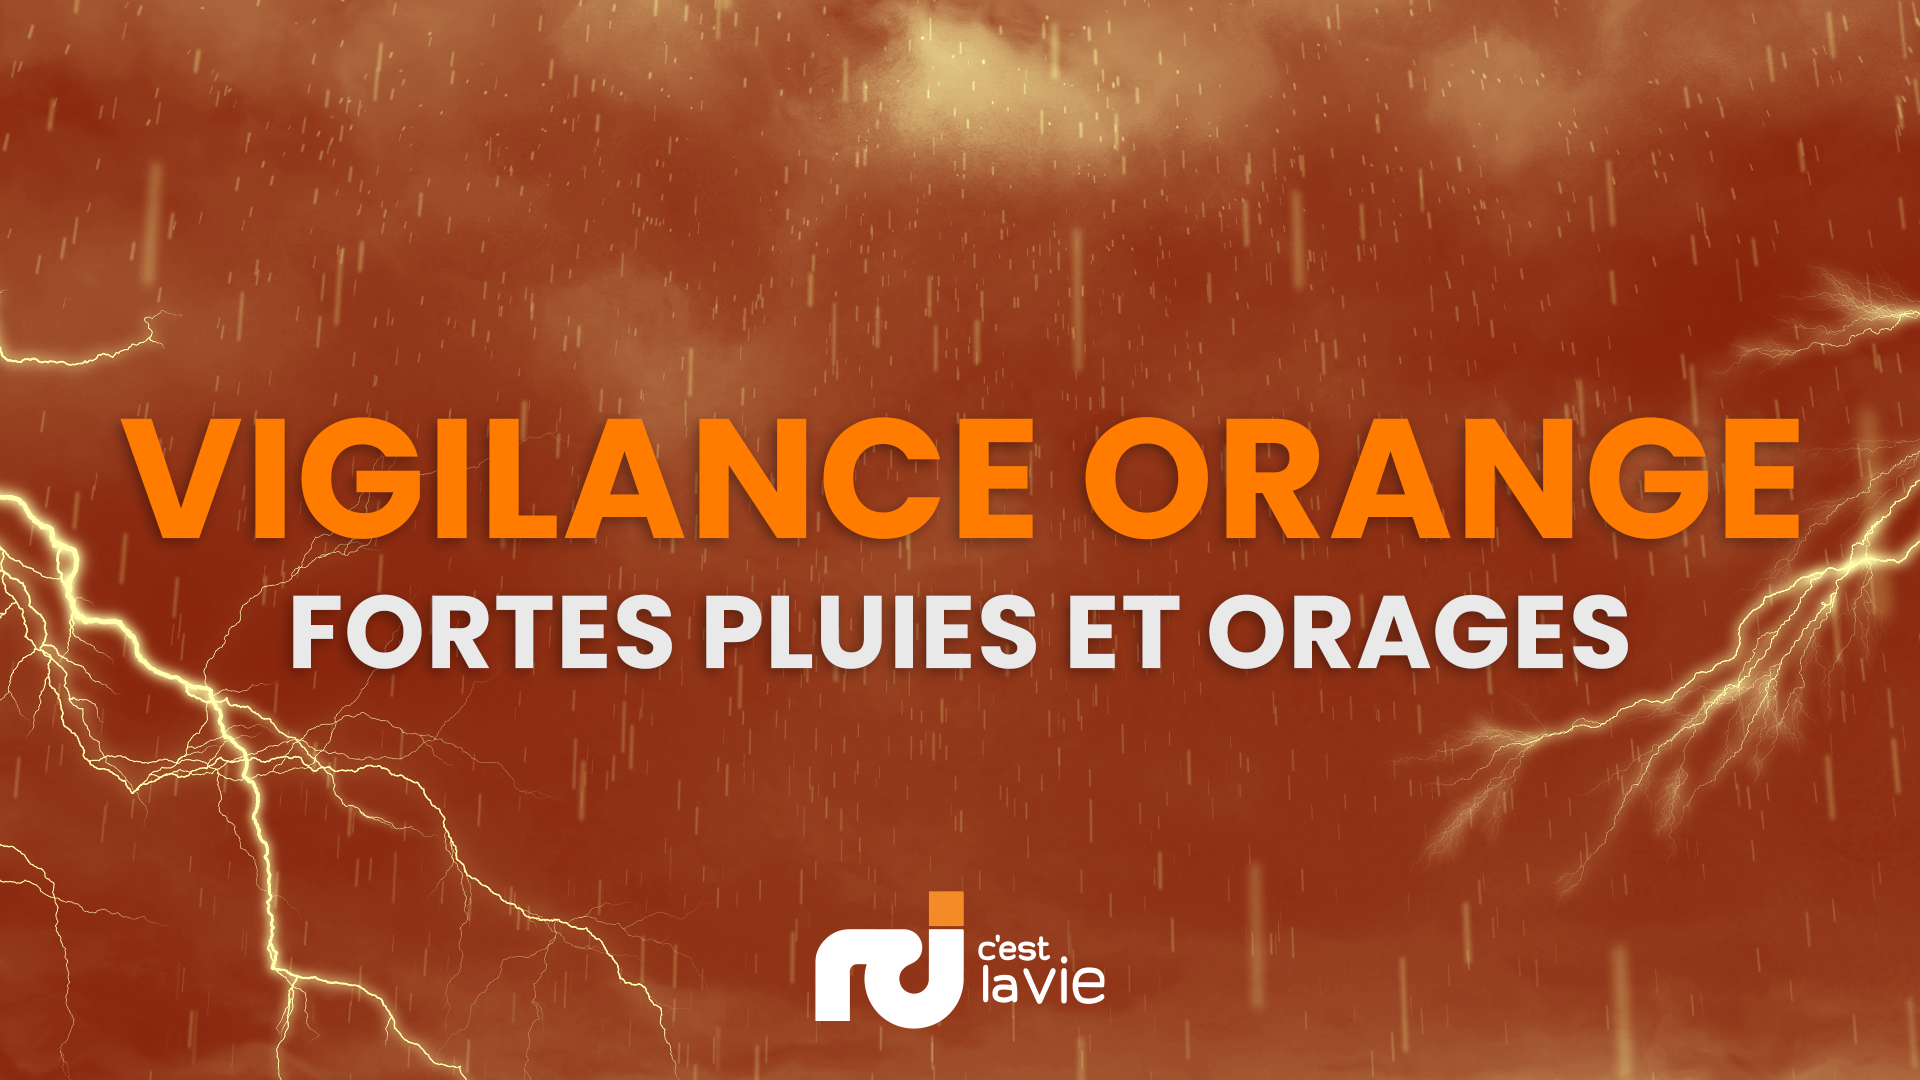     La Martinique passe en vigilance Orange pour « fortes pluies et orages »

